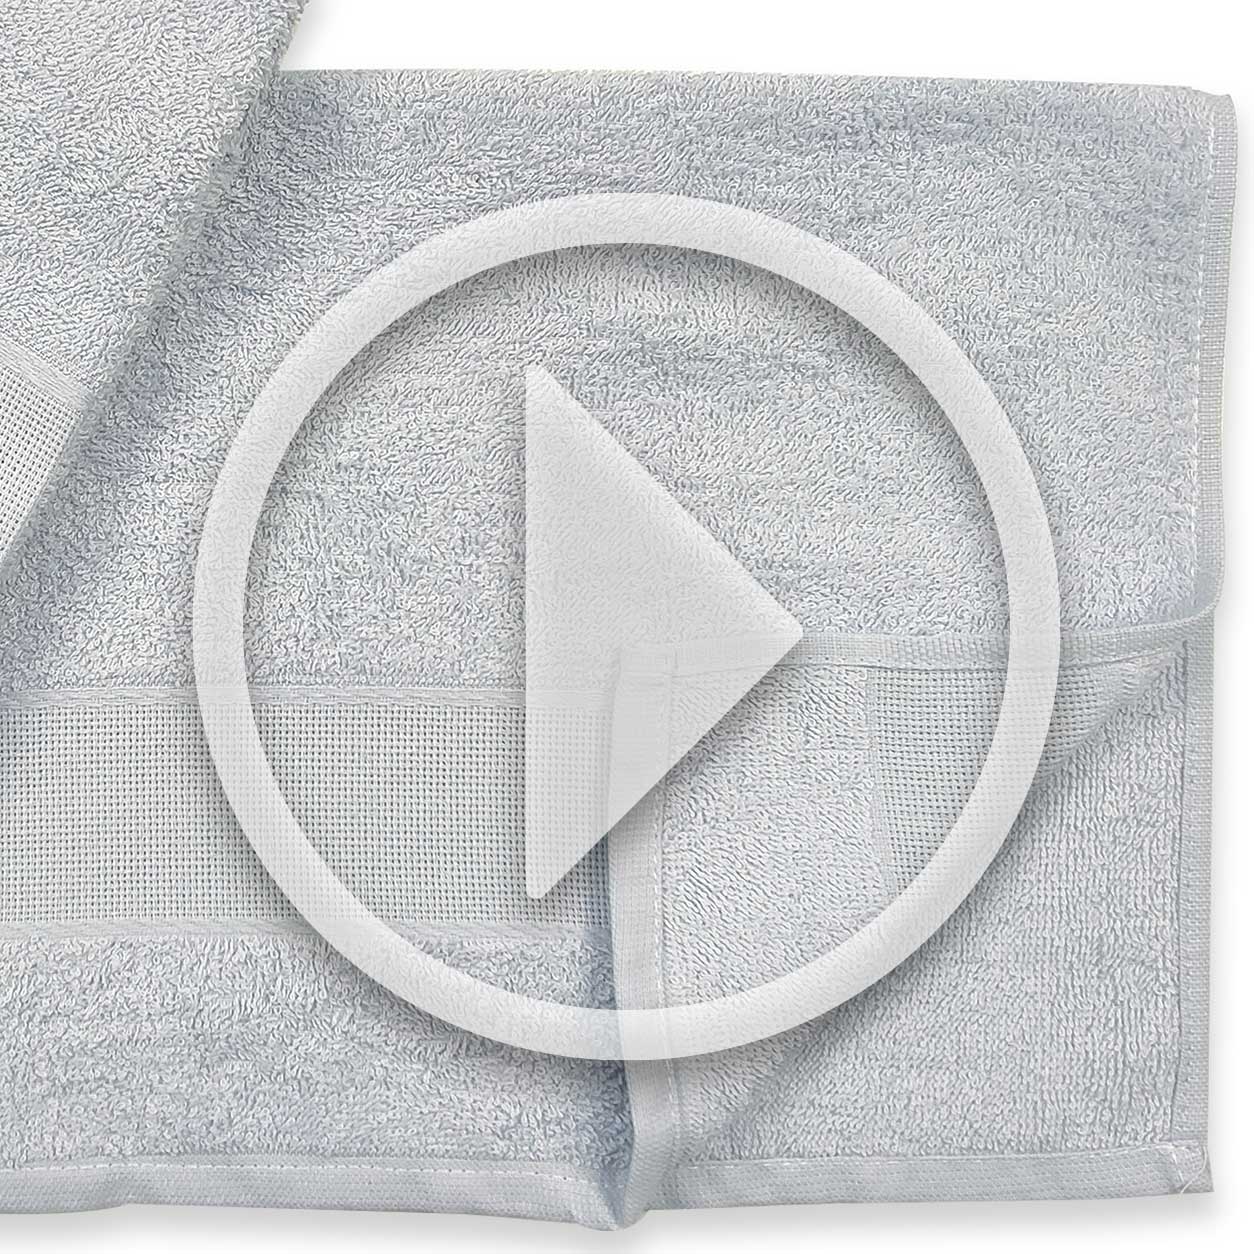 coppiola-asciugamani-grigi-video